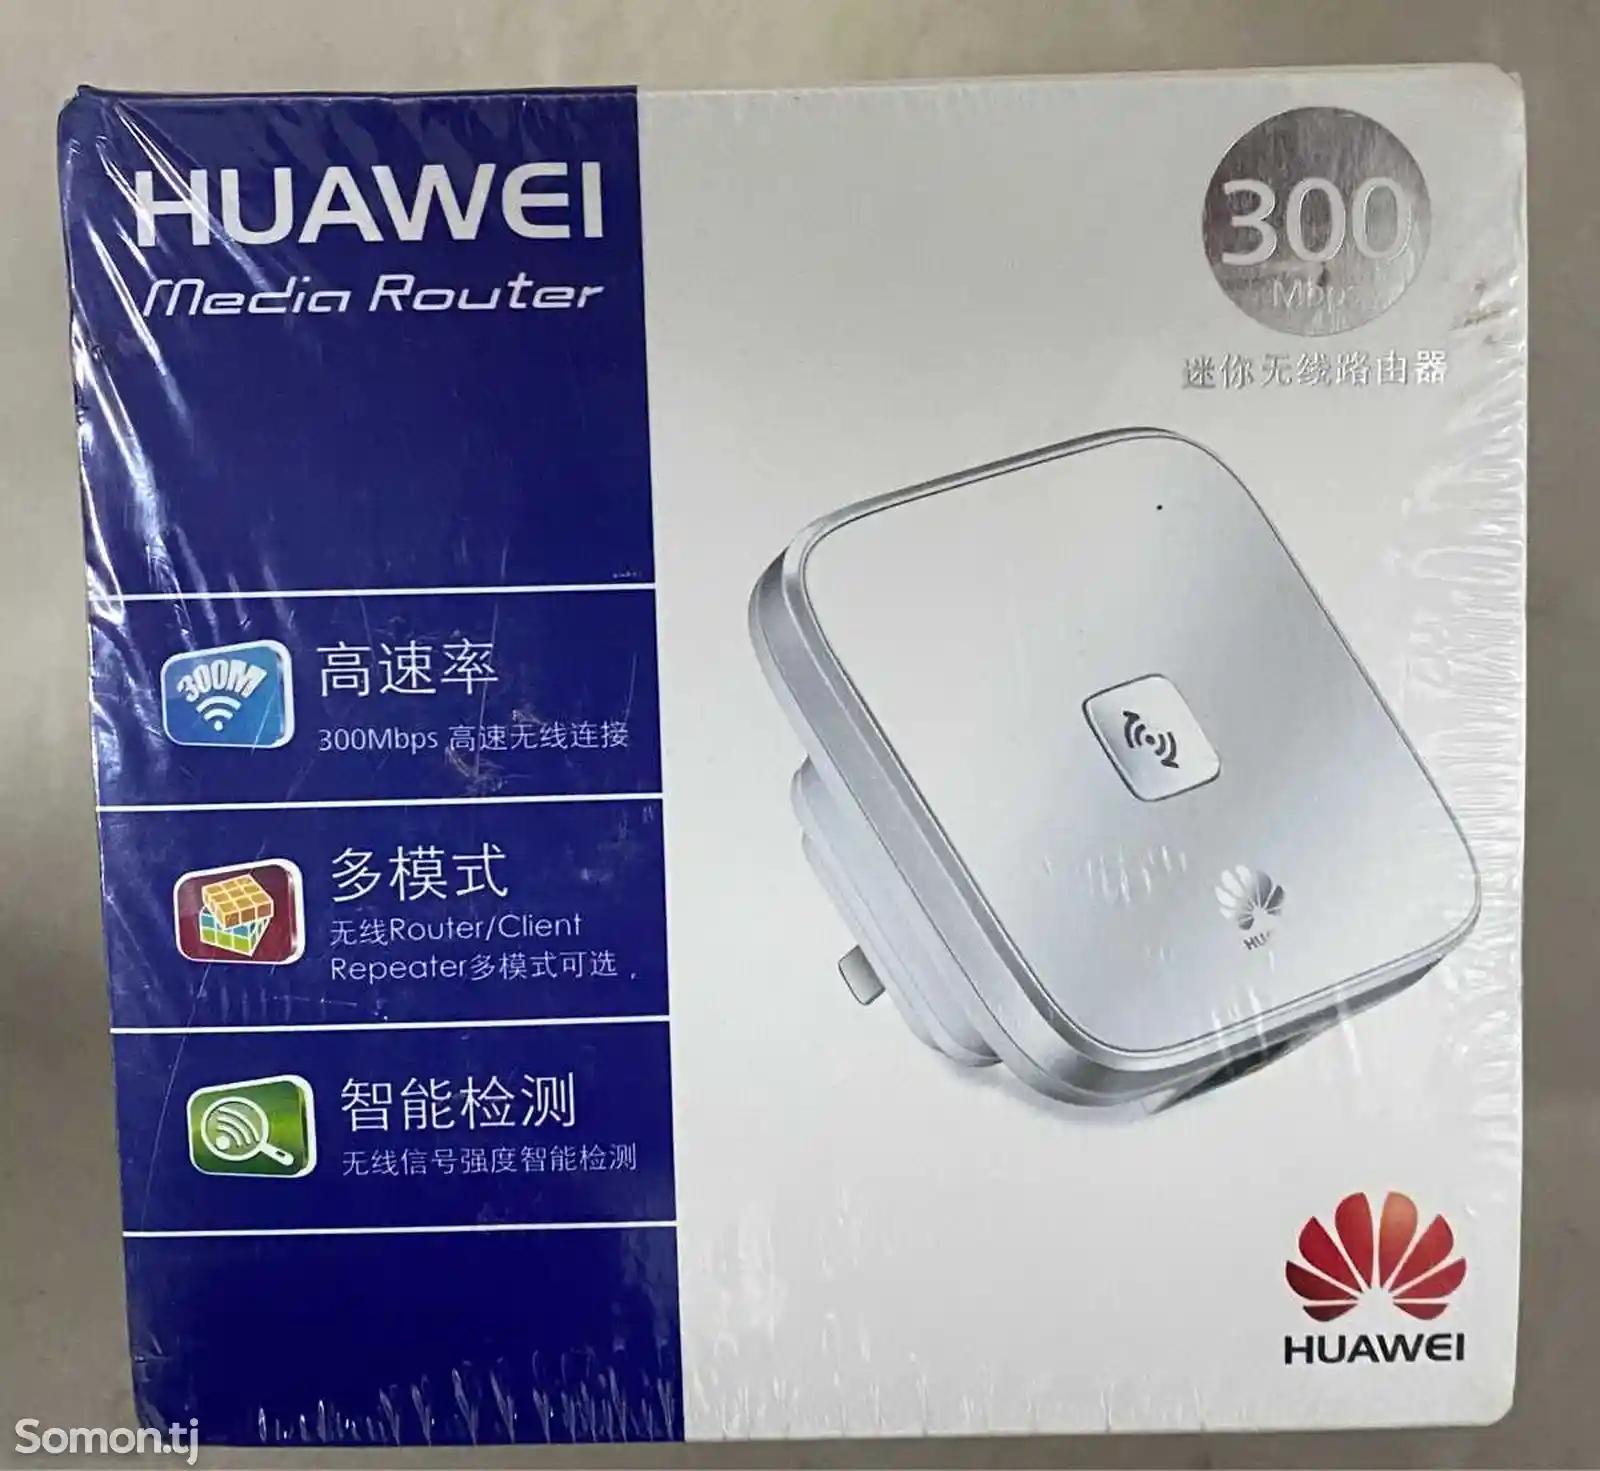 Wi-fi роутер Huawei ws322-1